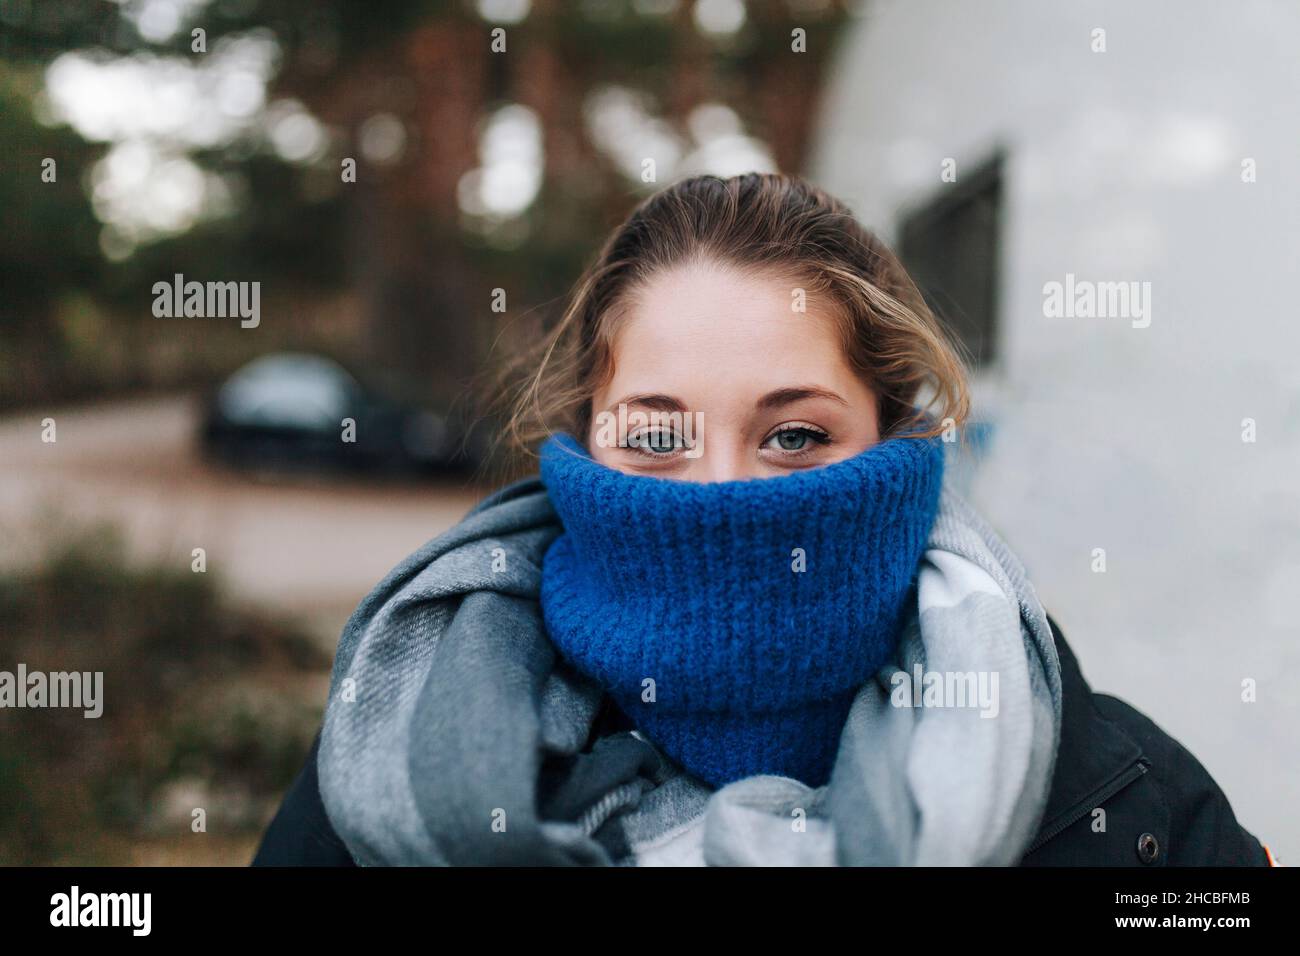 Il volto della donna è ricoperto da un maglione di dolcevita blu Foto Stock